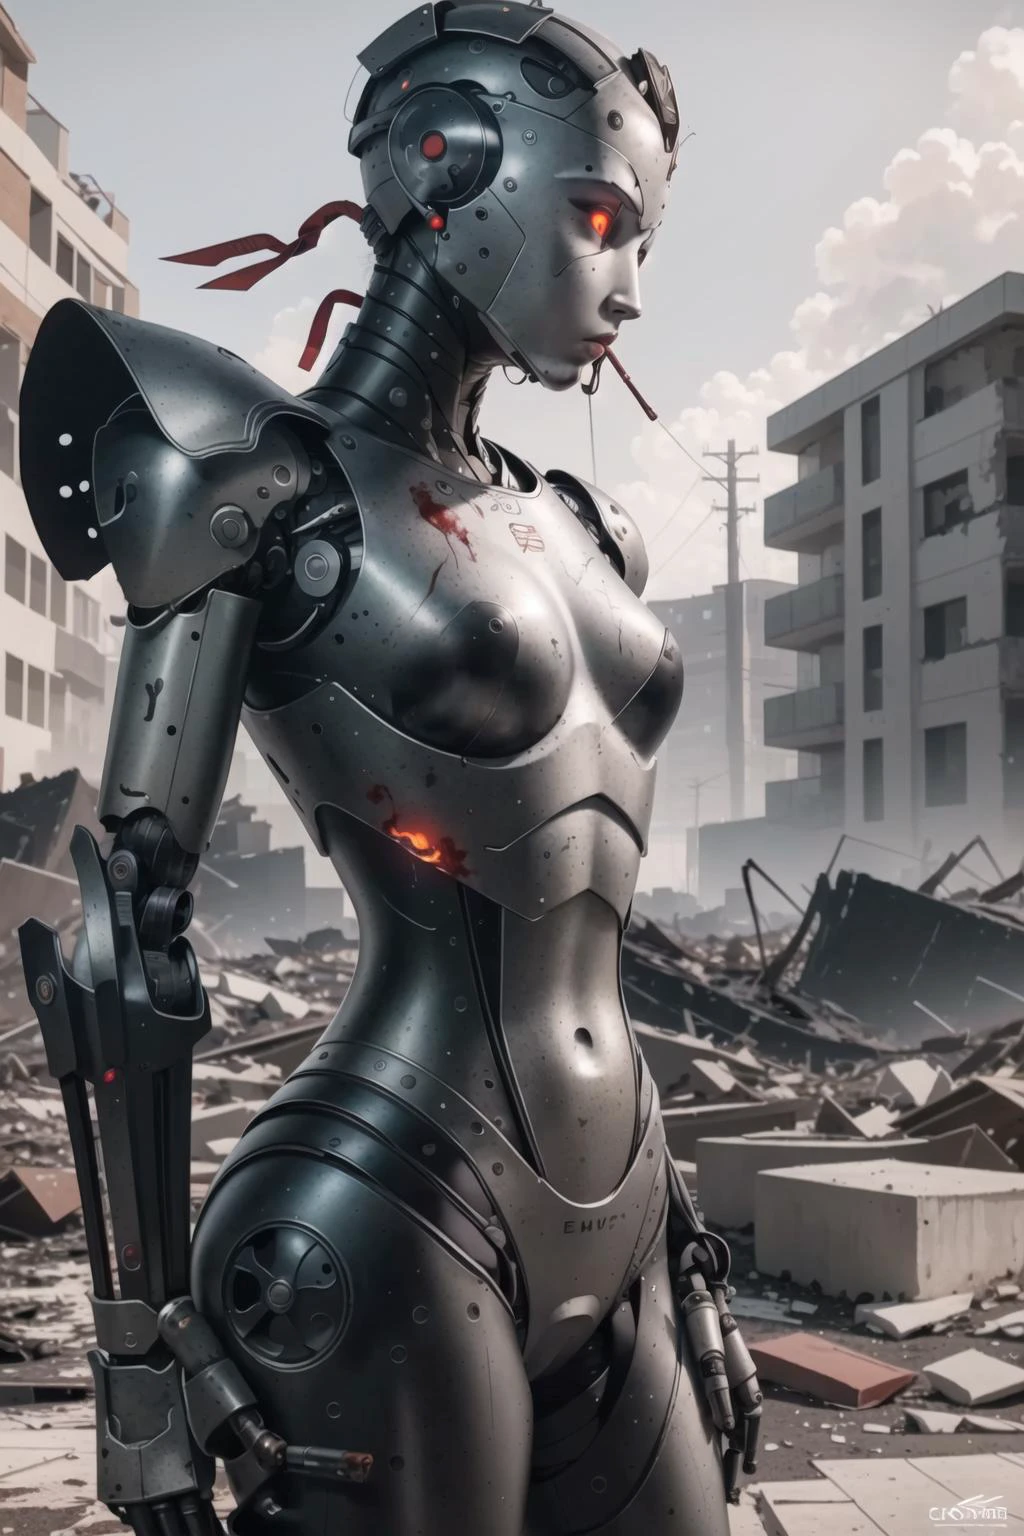 最好的质量, 复杂的细节,  (超现实主义数字插画),(杰作:1.1),


 血, 被破坏的风景, 碎片, 瓦砾, 背景中有火, 抽烟, 断肢, 恐怖的气氛, humanoid 机器人, 机器人, 机器人 关节, 关节, 头盔, 盔甲, 机器人 girl,